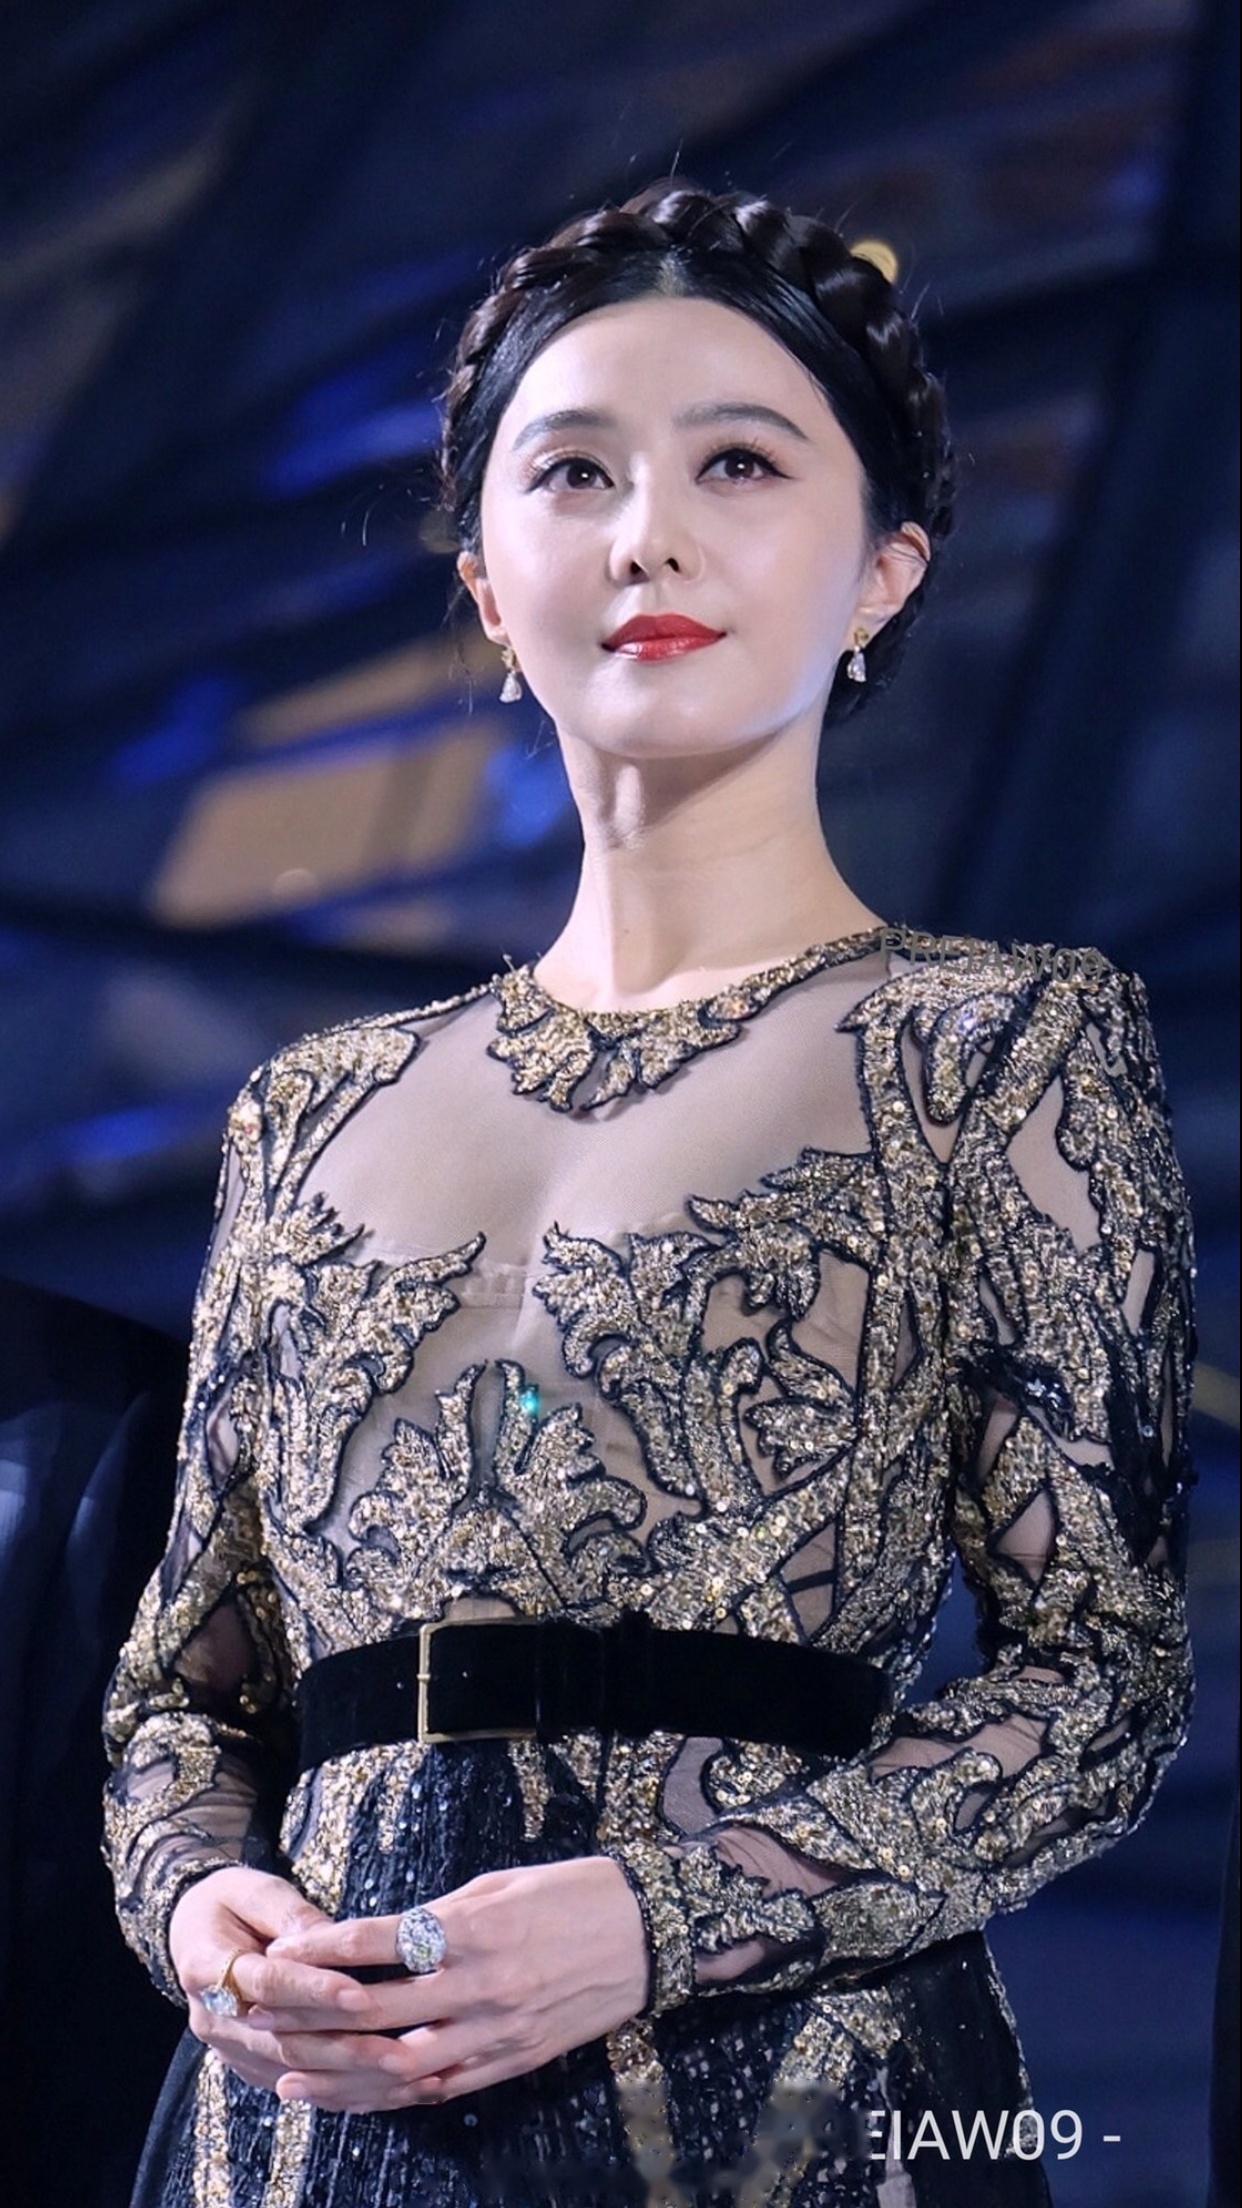 中国女演员范冰冰成为泰国kingpower王权免税全球形象代言人,这是新的